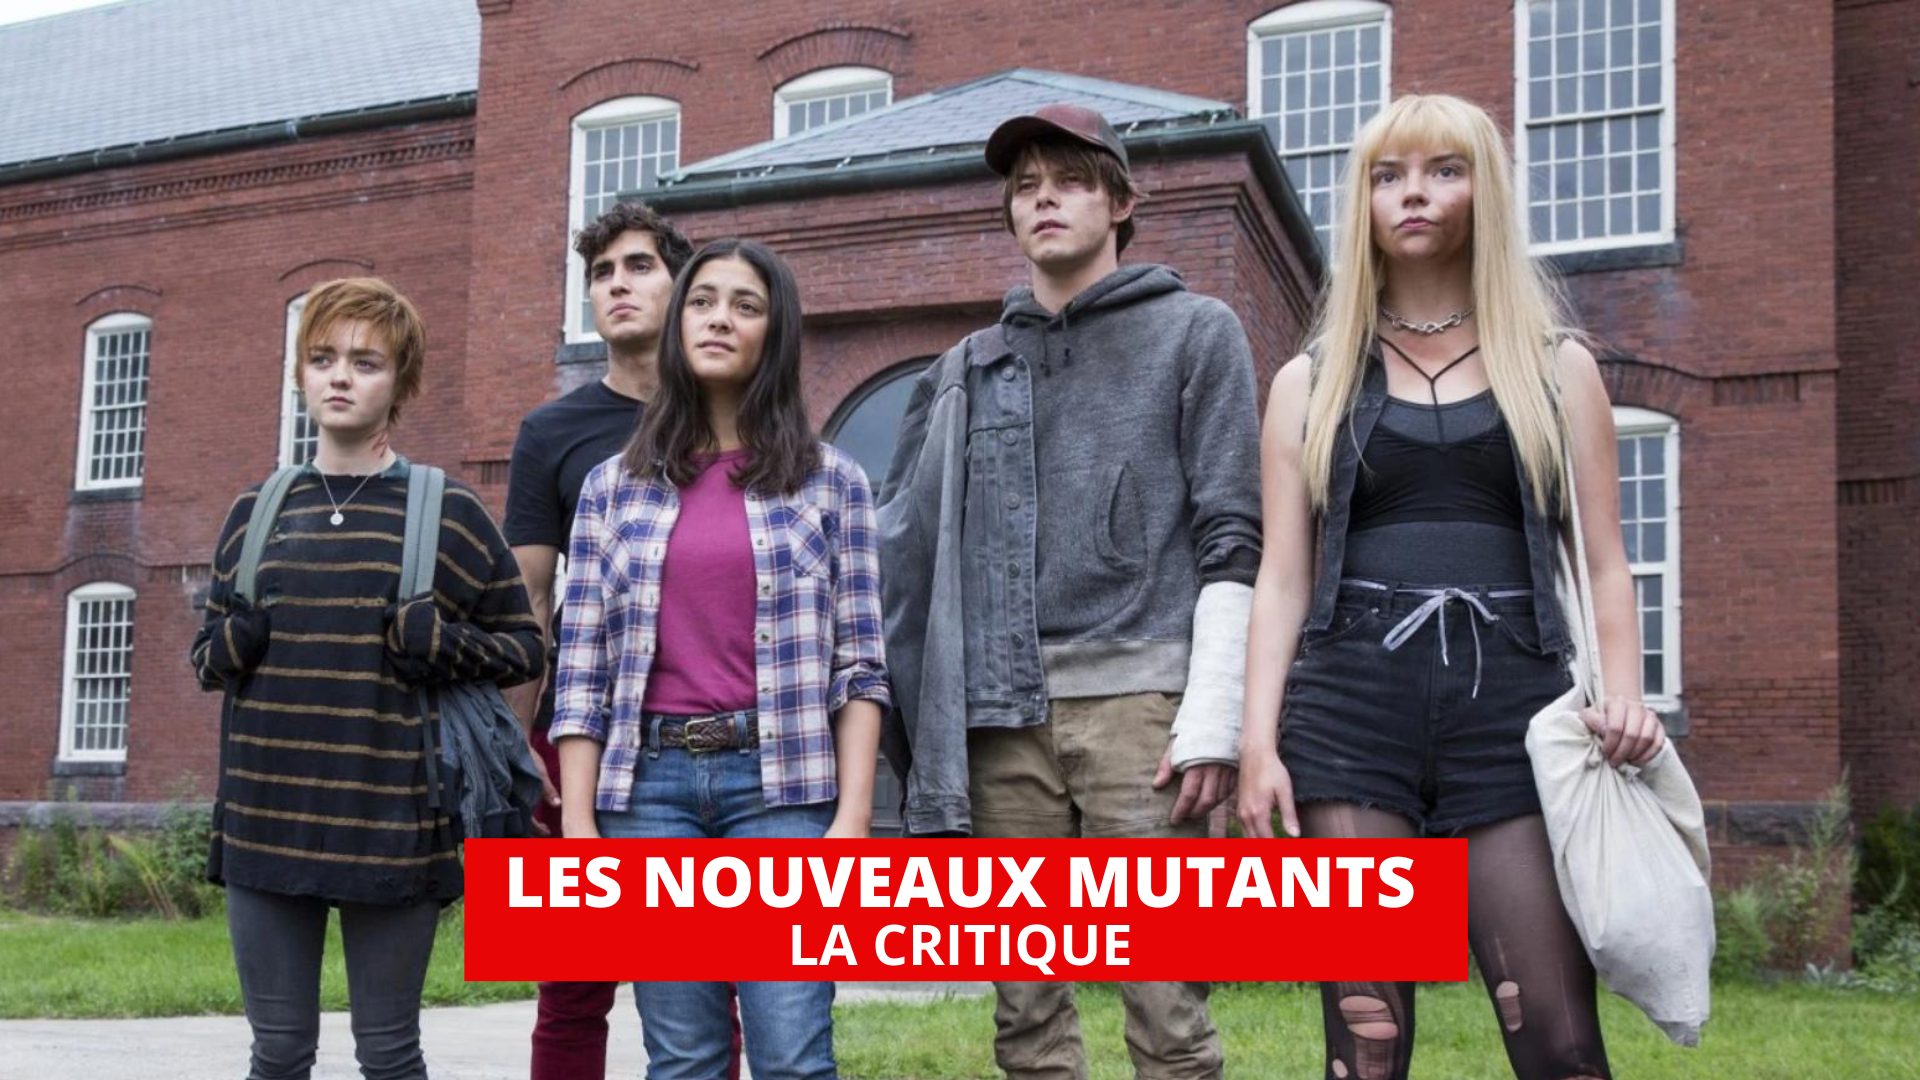 Les Nouveaux mutants : les terrifiants traumas des super-héros